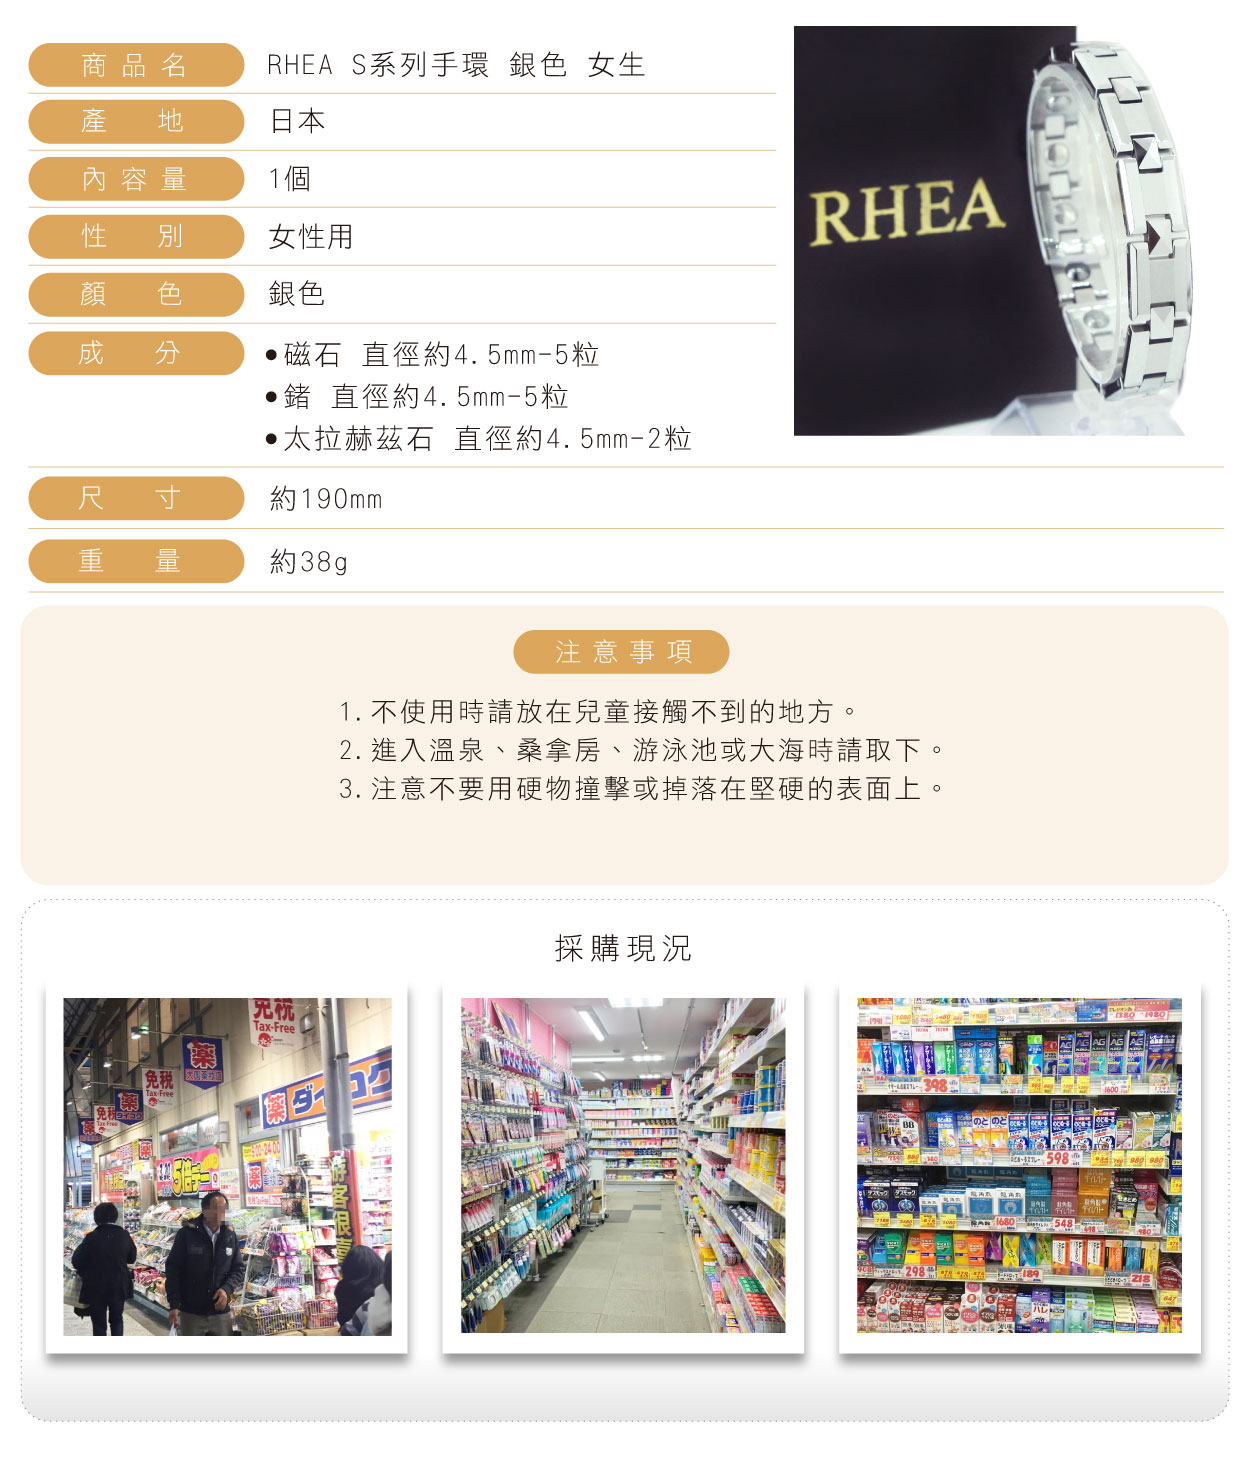 RHEA-S系列手環-銀色-女生-繁